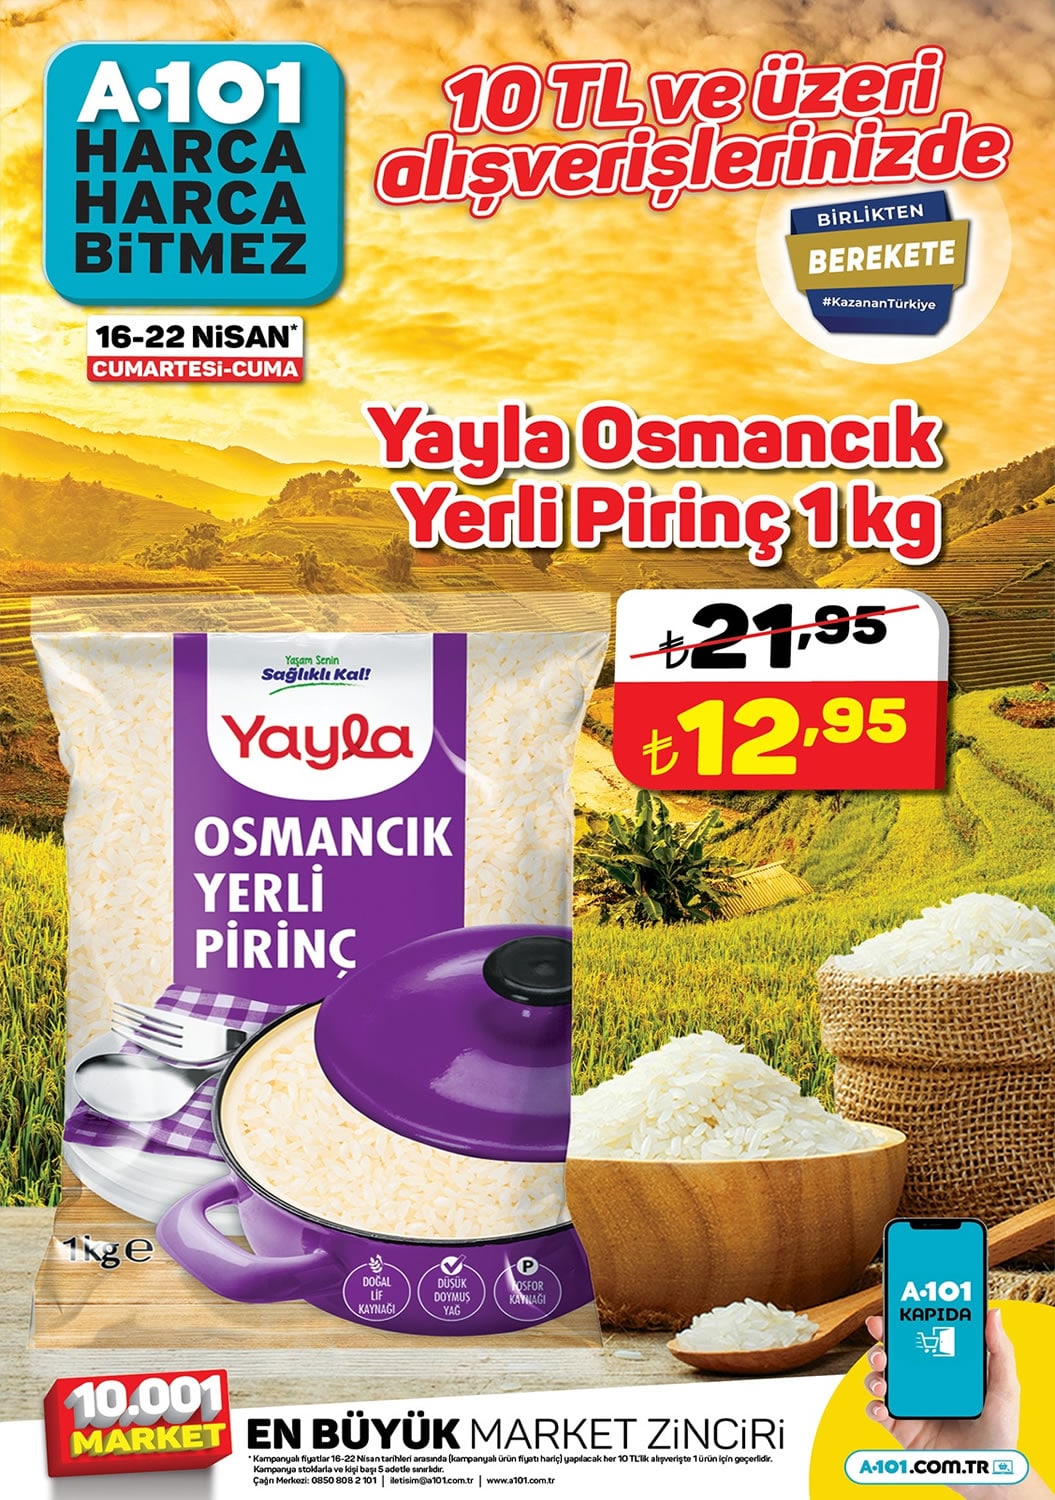 Yayla Osmancık Yerli Pirinç A101 16 - 22 Nisan